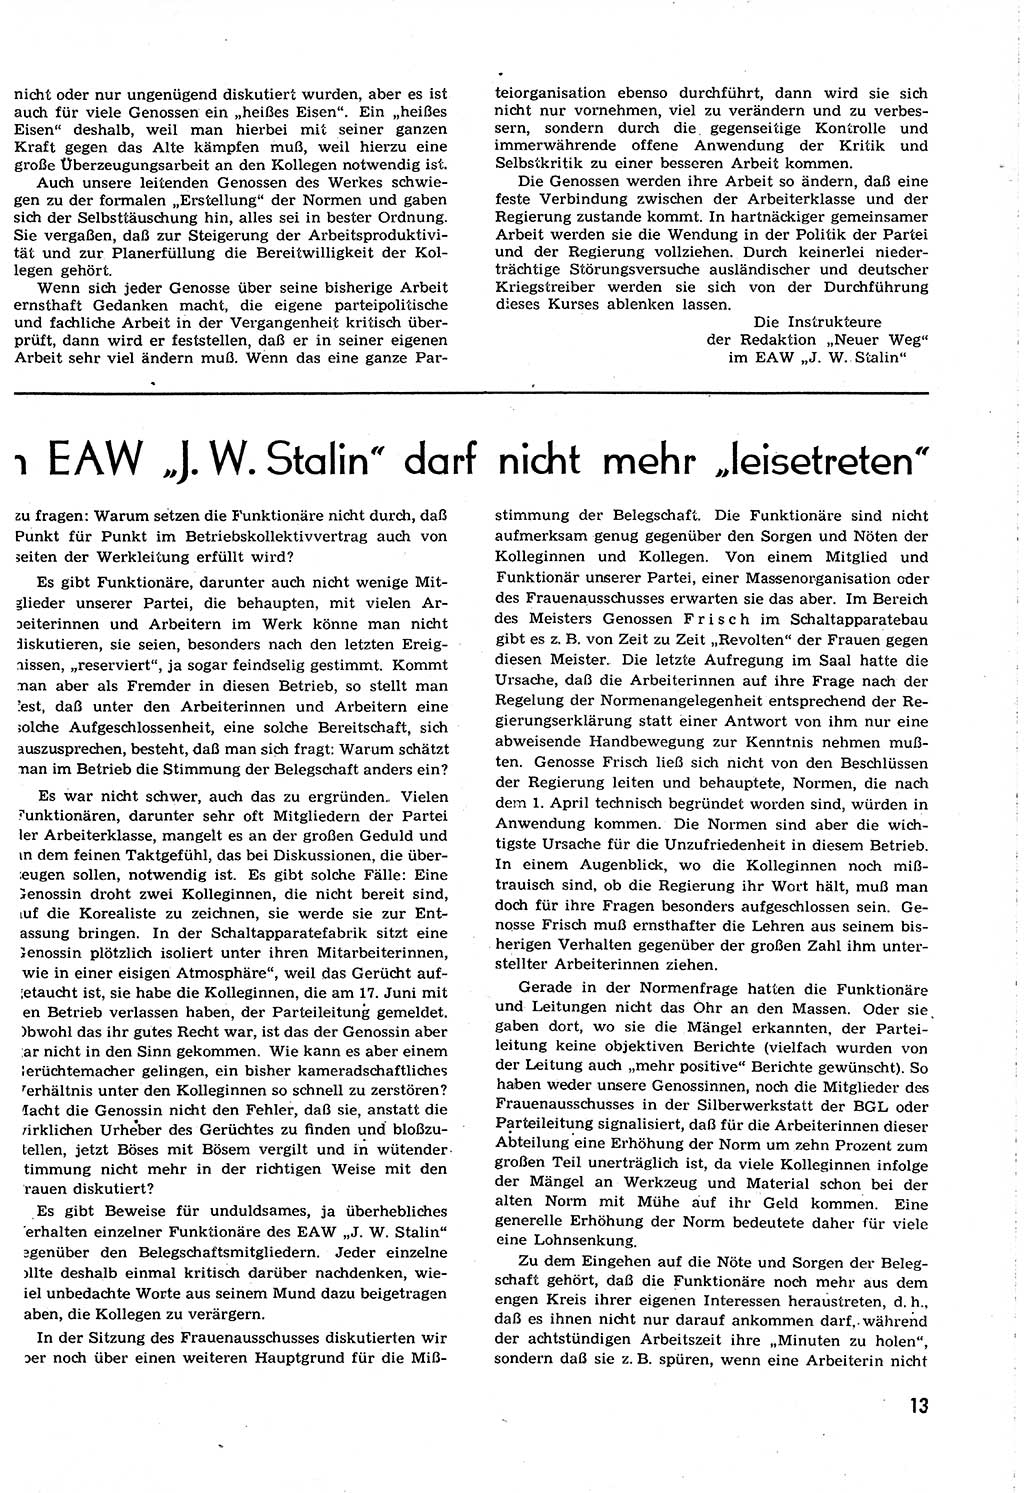 Neuer Weg (NW), Organ des Zentralkomitees (ZK) [Sozialistische Einheitspartei Deutschlands (SED)] für alle Parteiarbeiter, 8. Jahrgang [Deutsche Demokratische Republik (DDR)] 1953, Heft 12/13 (NW ZK SED DDR 1953, H. 12/13)